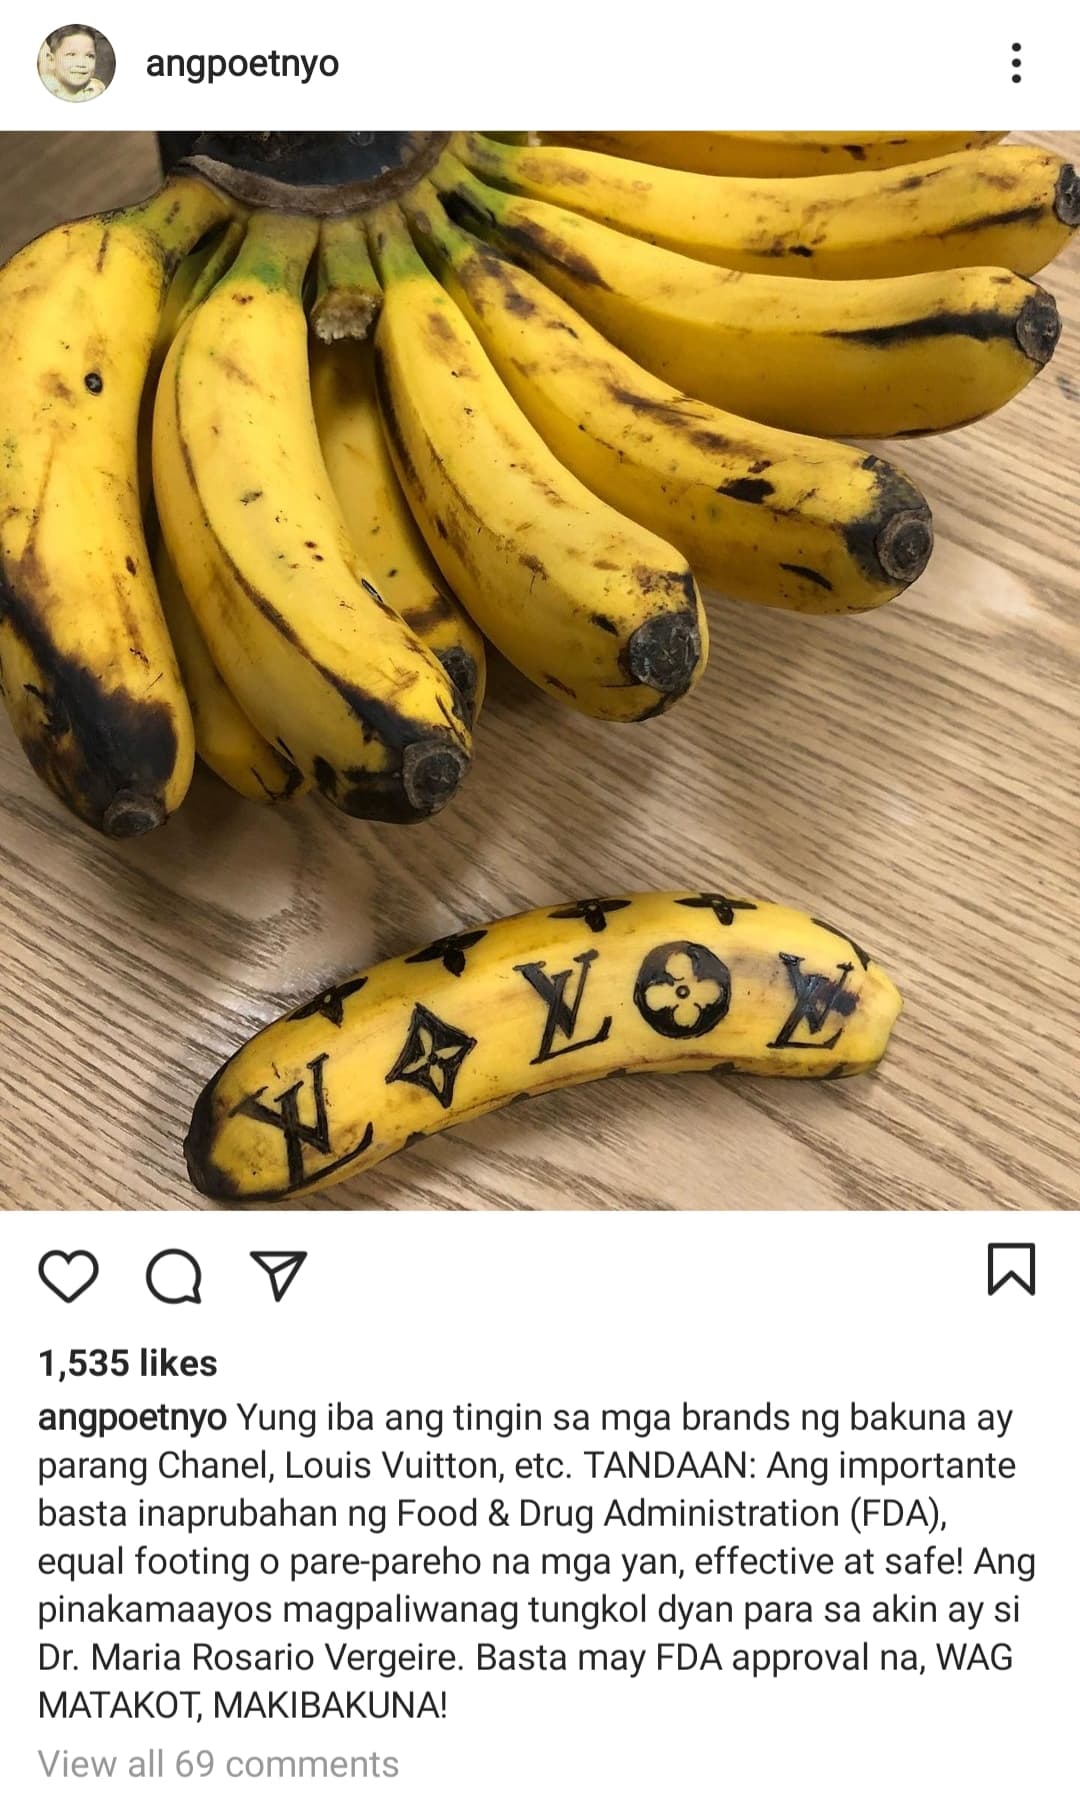 joey de leon uses banana as metaphor in his instagram post